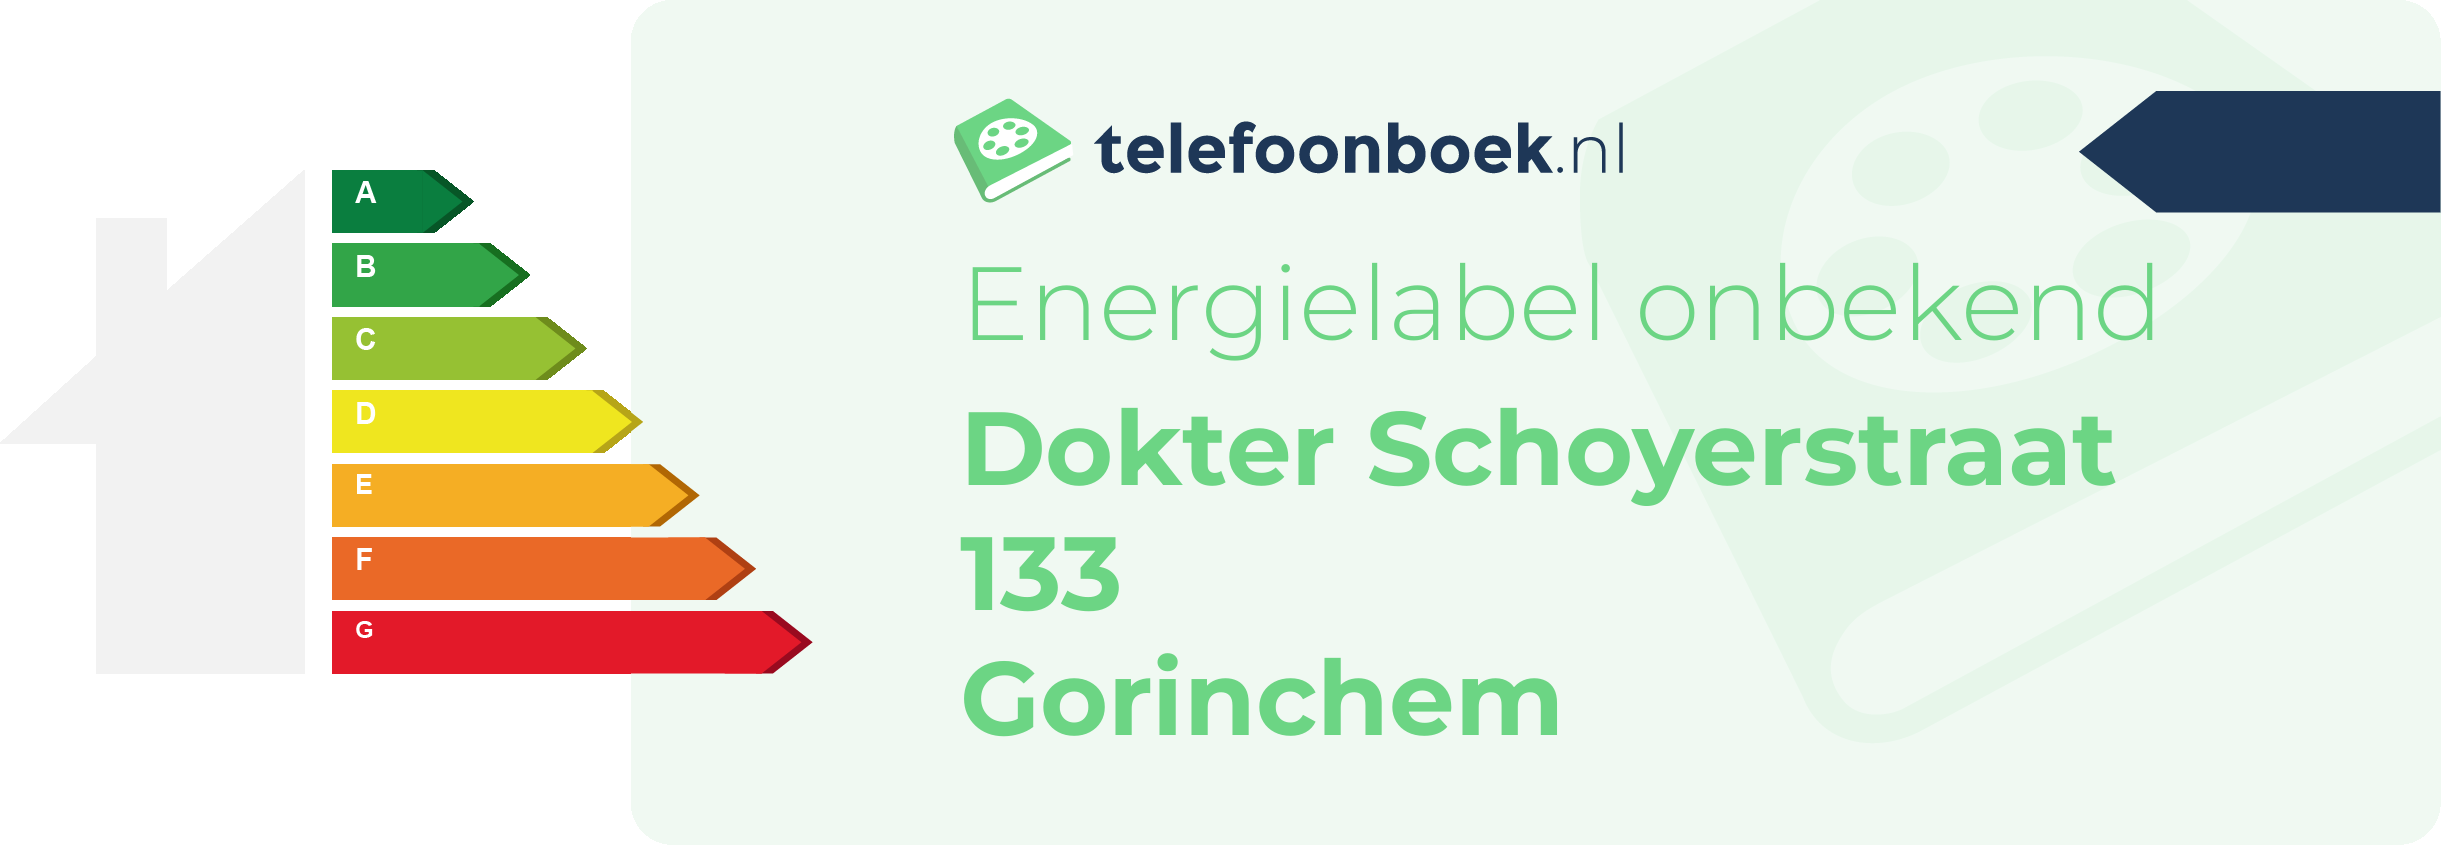 Energielabel Dokter Schoyerstraat 133 Gorinchem